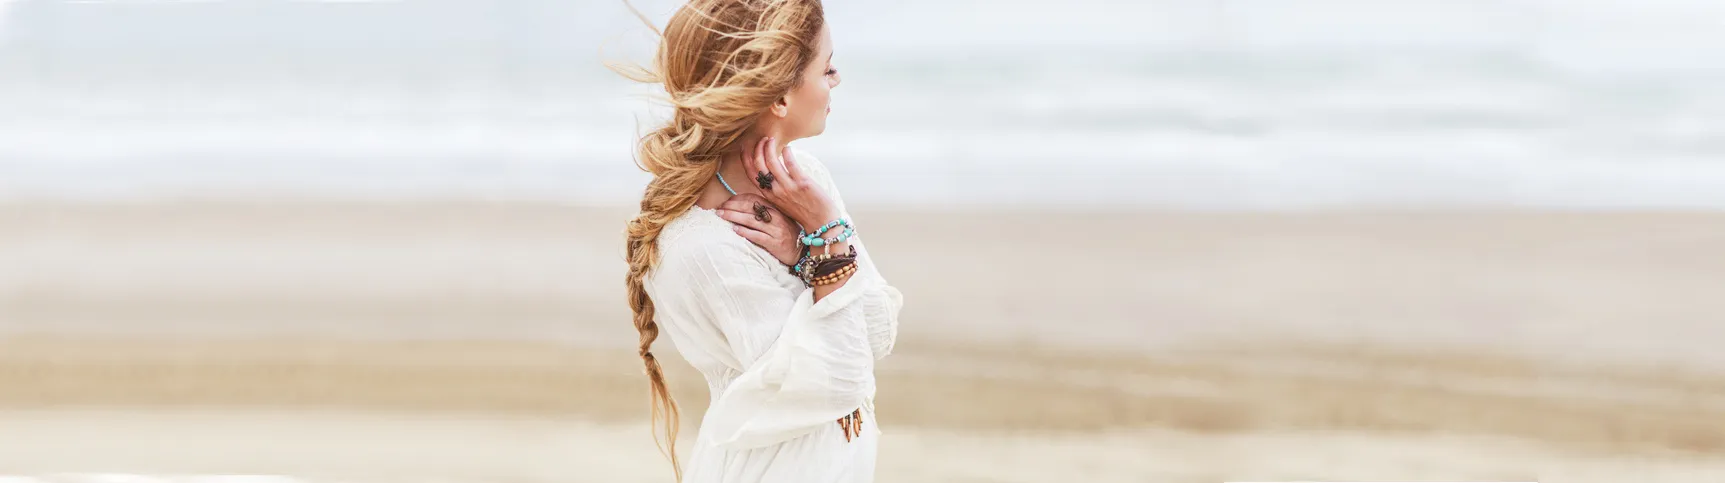 Verträumte hübsche junge Frau am Strand. Sie ist sommerlich bekleidet und schaut zur Seite. Am Hals und am Handgelenk trägt sie bunten Modeschmuck.